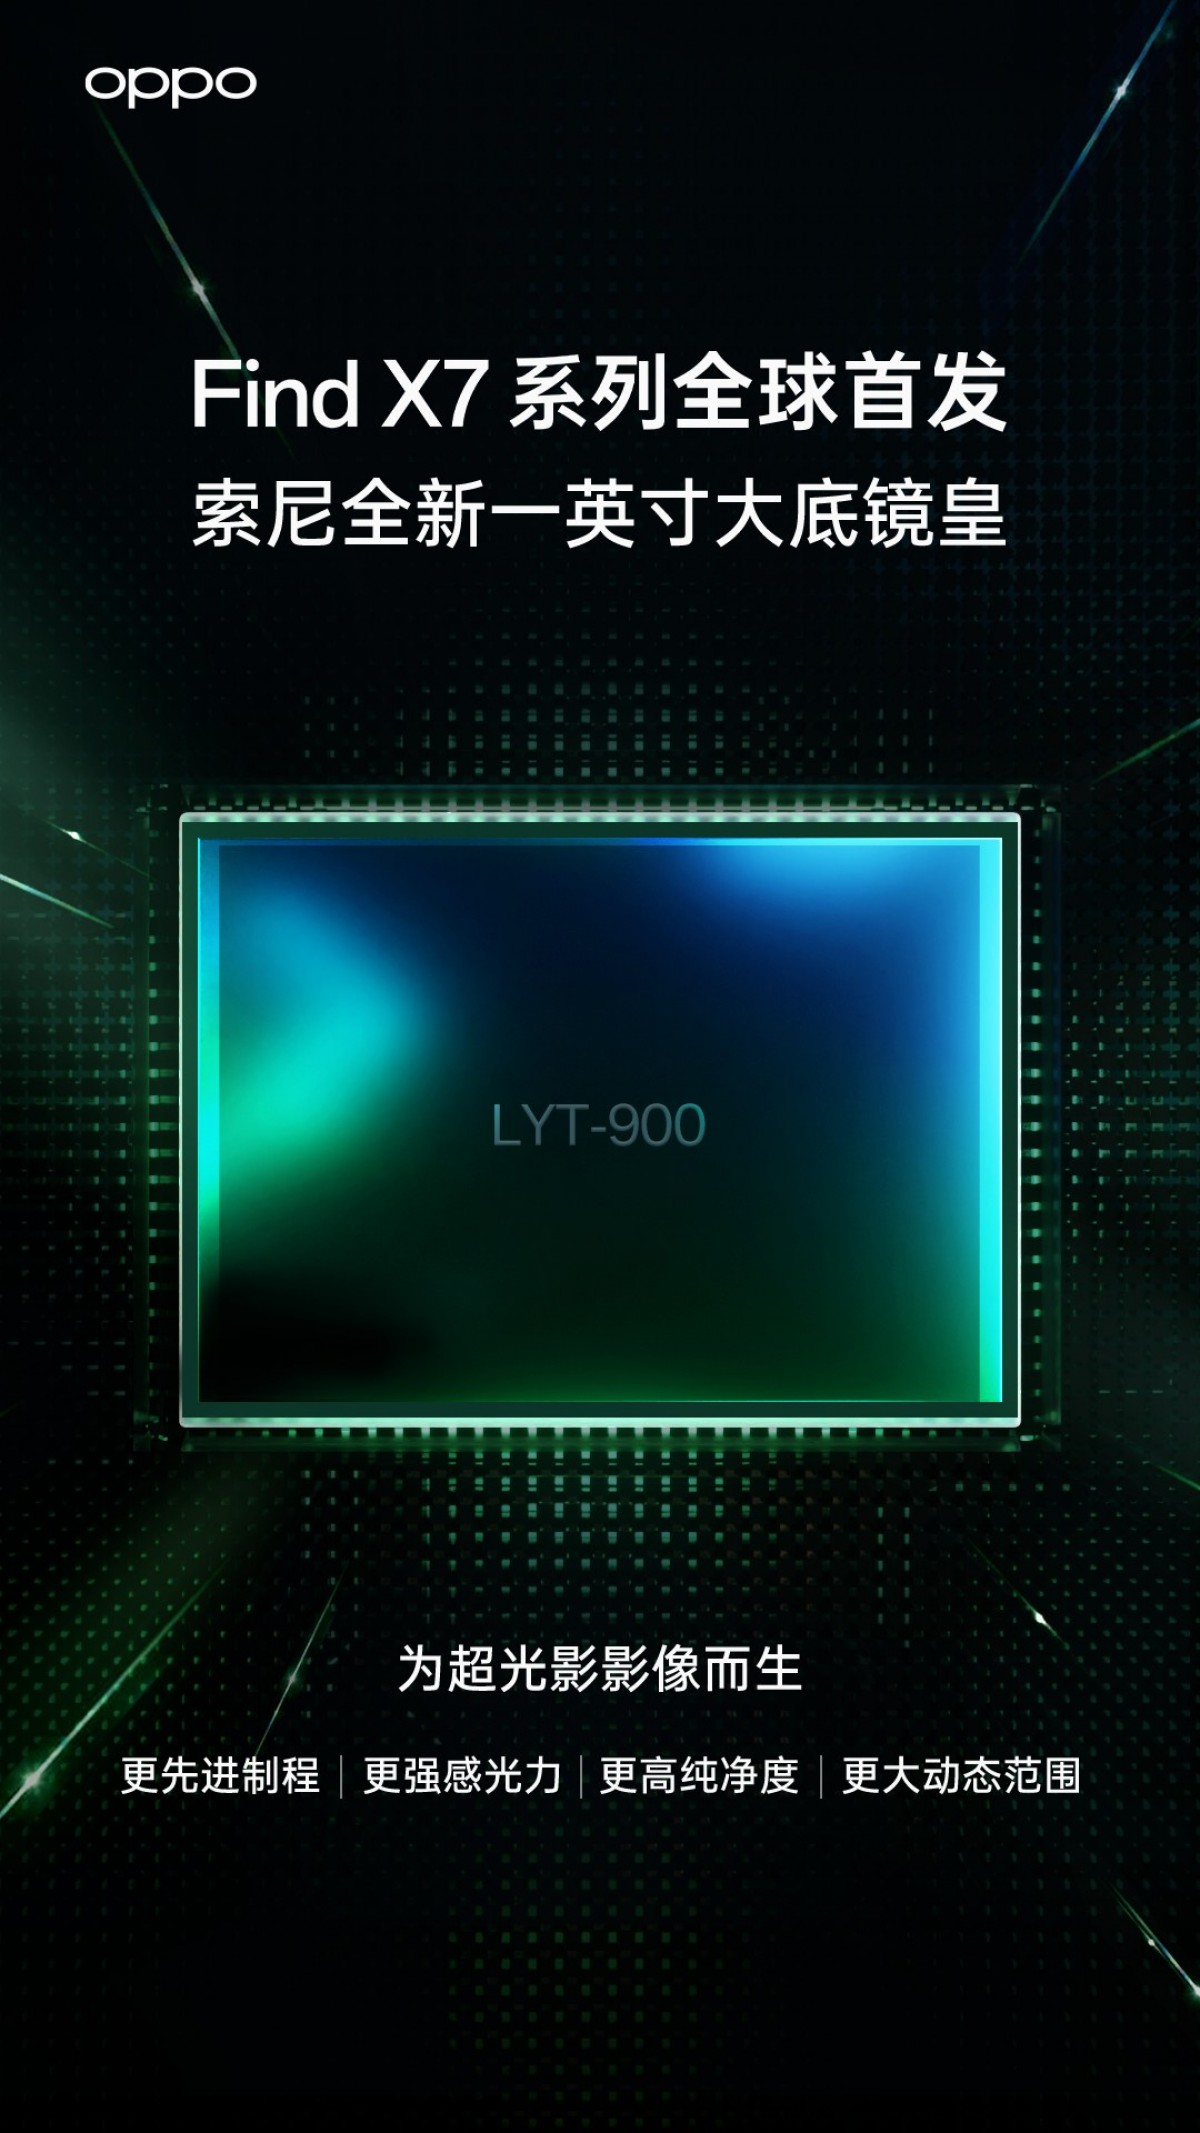 تؤكد شركة أوبو على مستشعر Sony LYT-900 بحجم 1 بوصة لجهاز Find X7